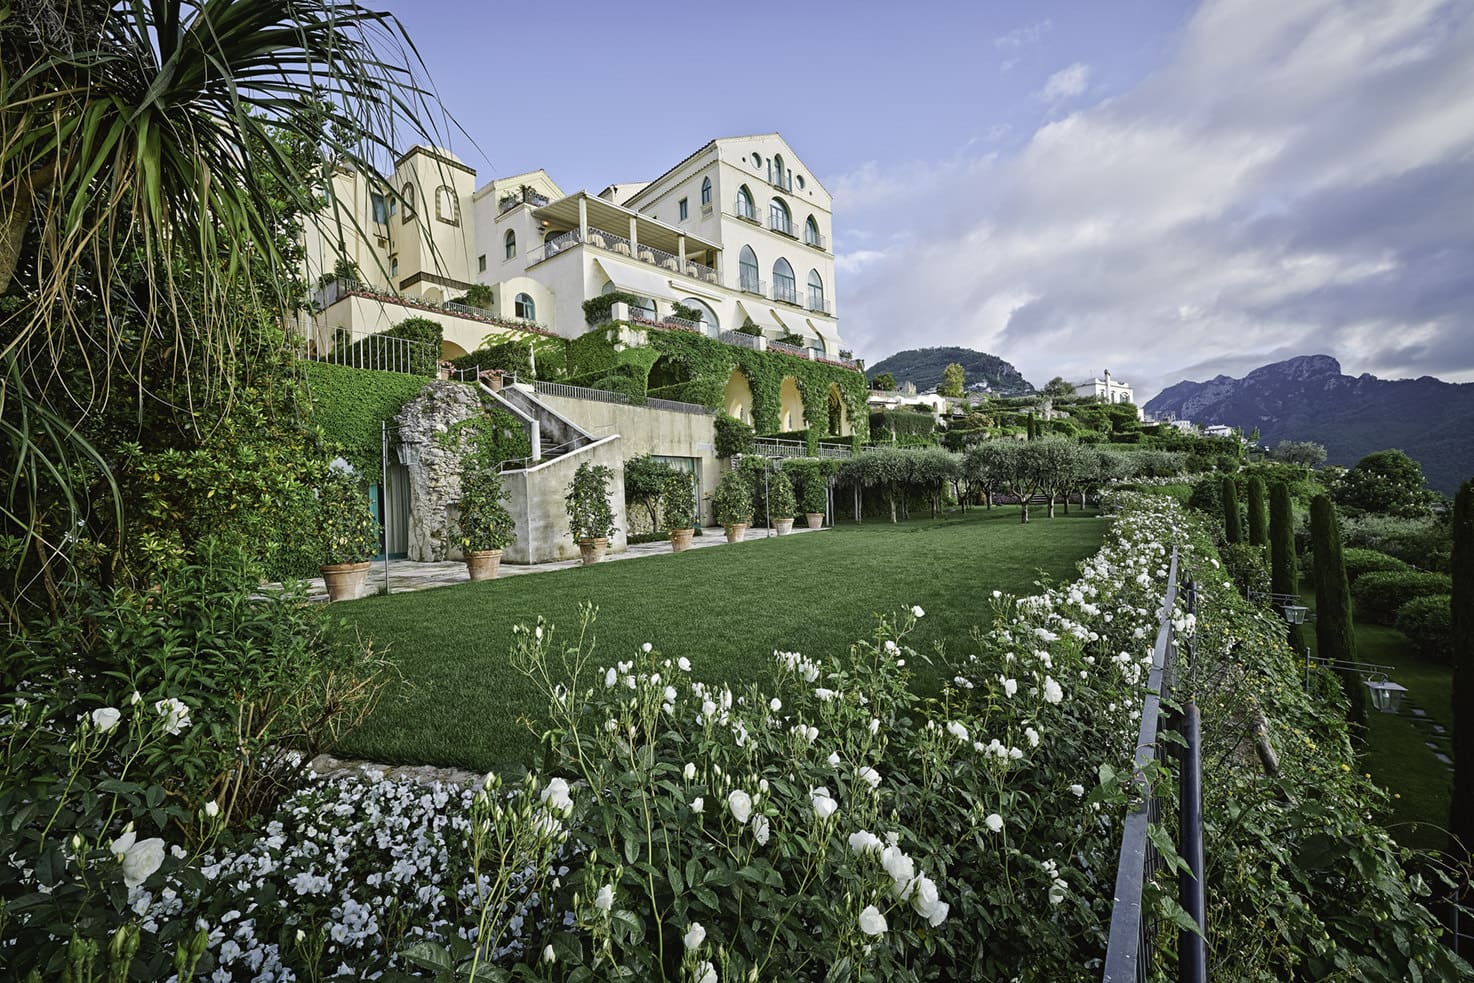 Panorama del Hotel Belmond Caruso en la Costa Amalfitana, destacando su elegante piscina infinita y jardines preparados para una celebración nupcial, con vistas panorámicas al Mediterráneo